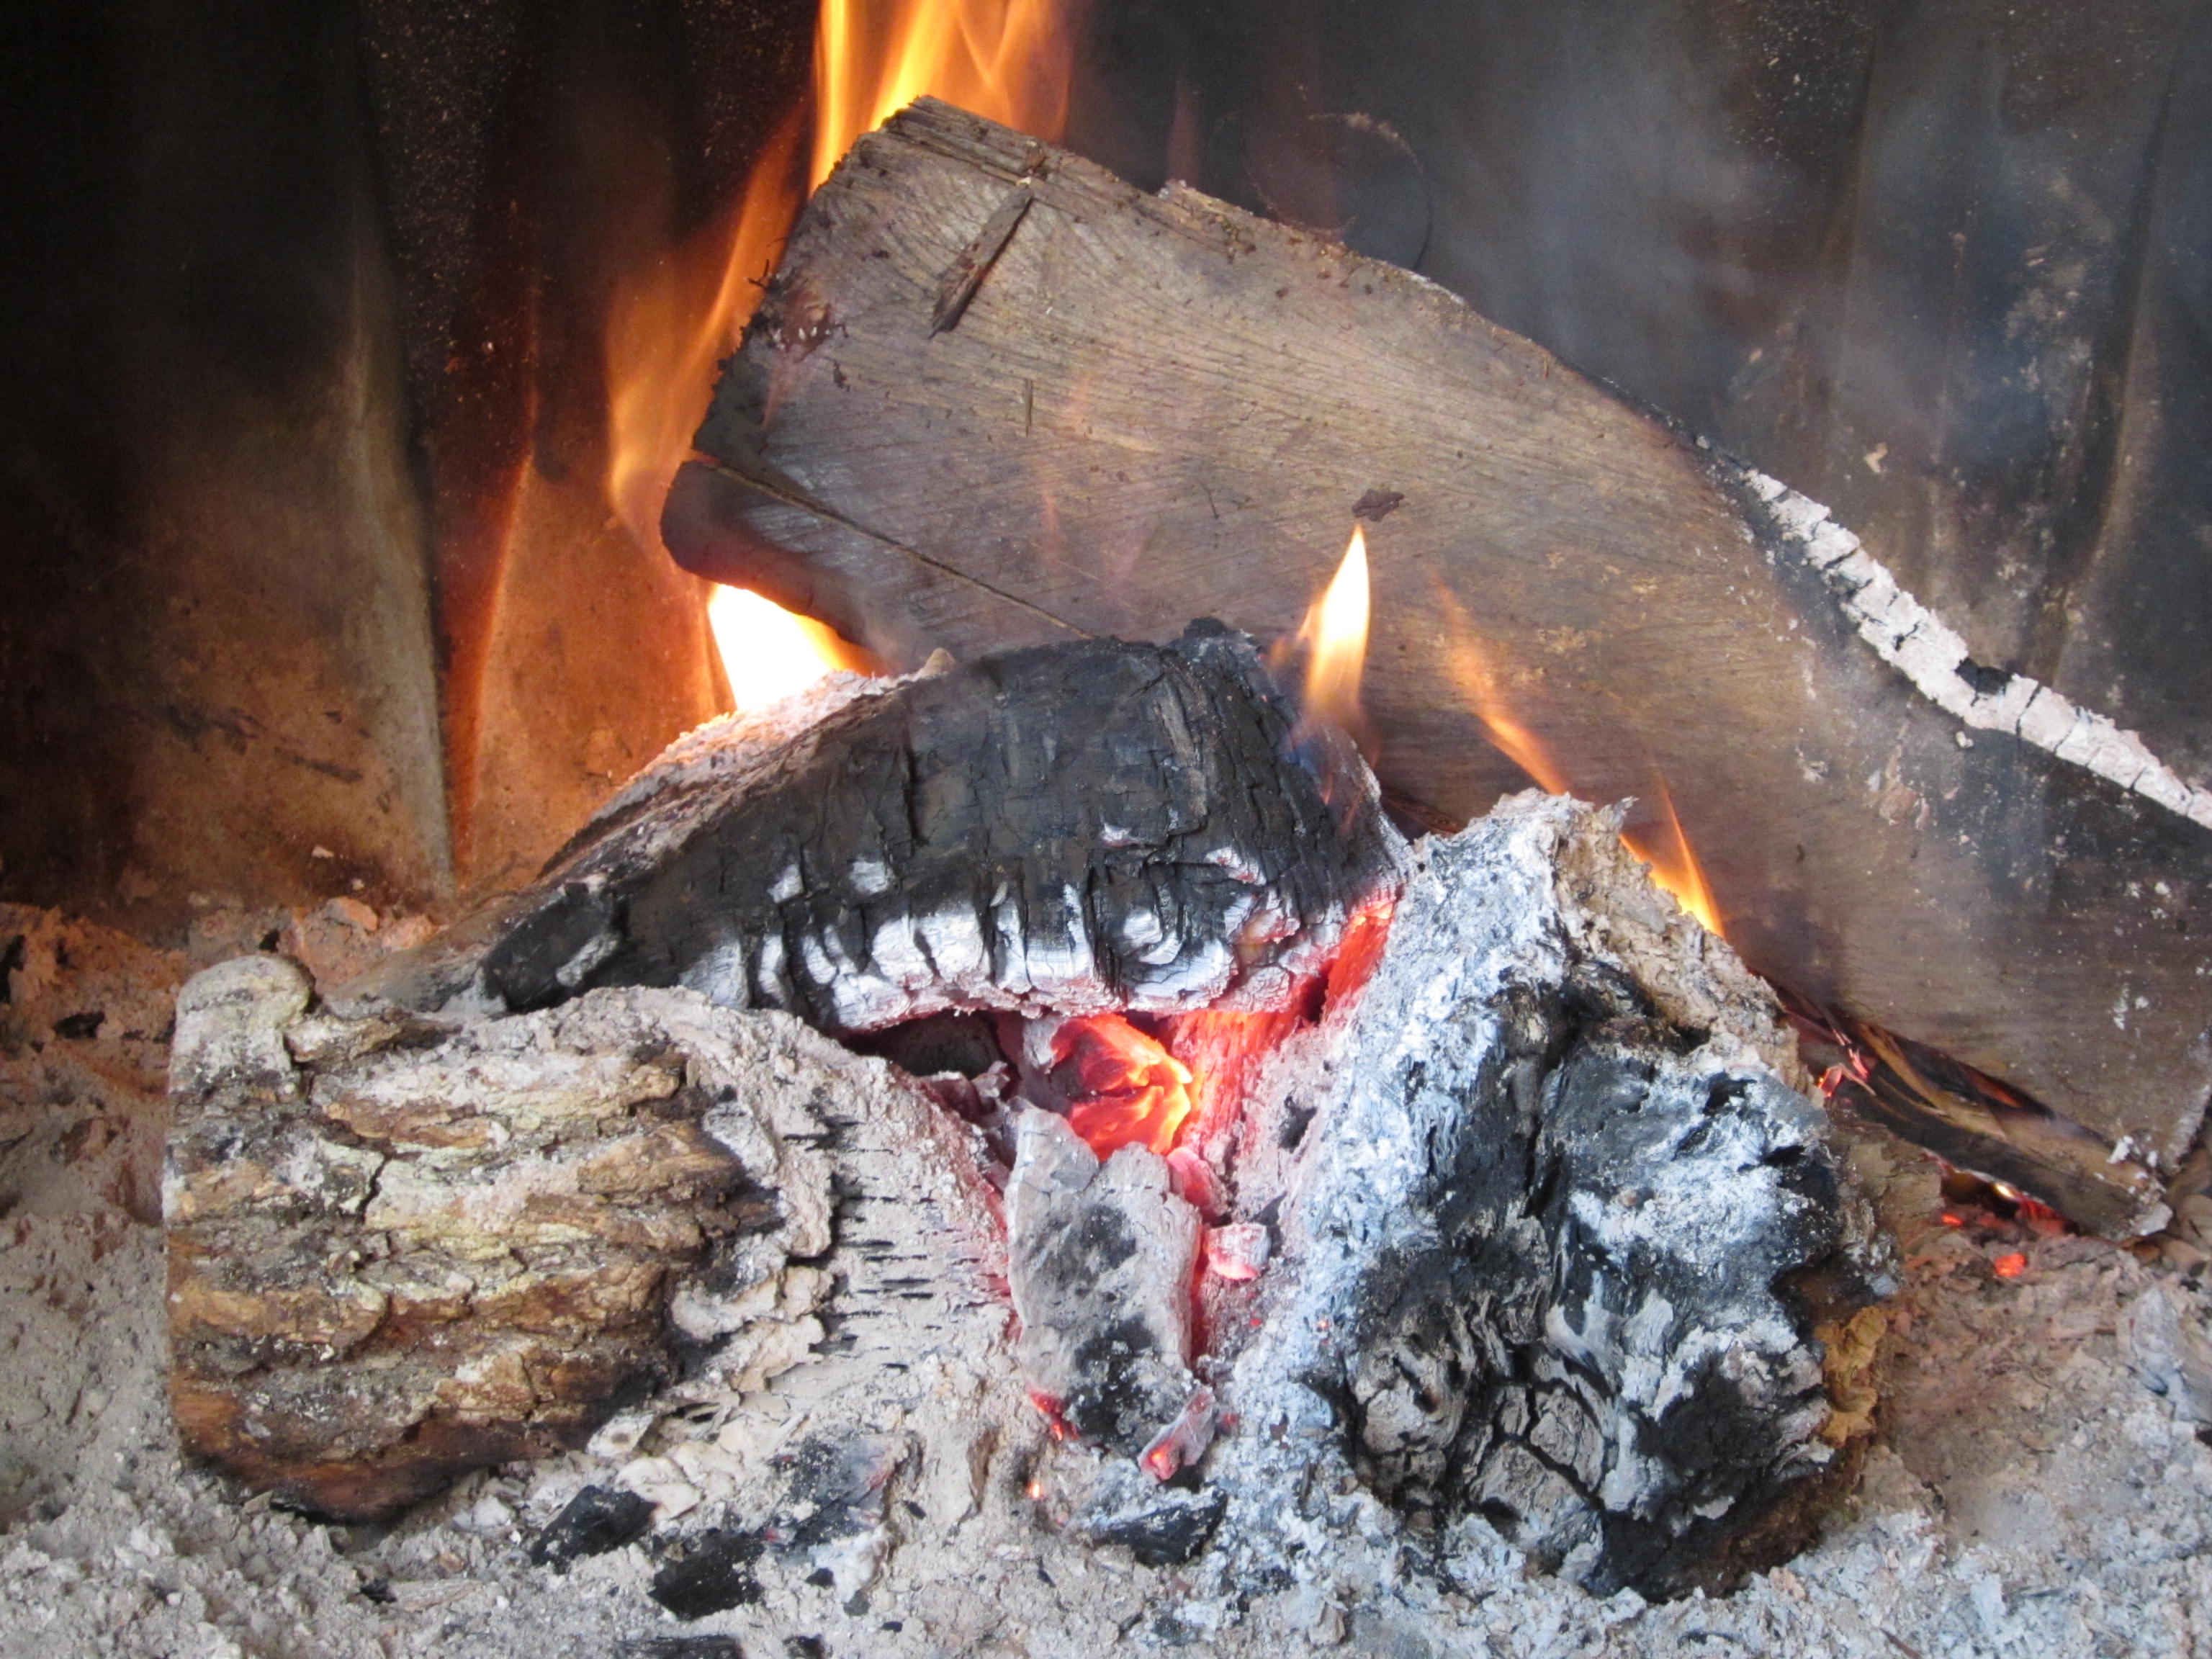 Μειωμένο κίνδυνο πρόωρου θανάτου συνεπάγεται ο περιορισμός της καύσης ξύλων